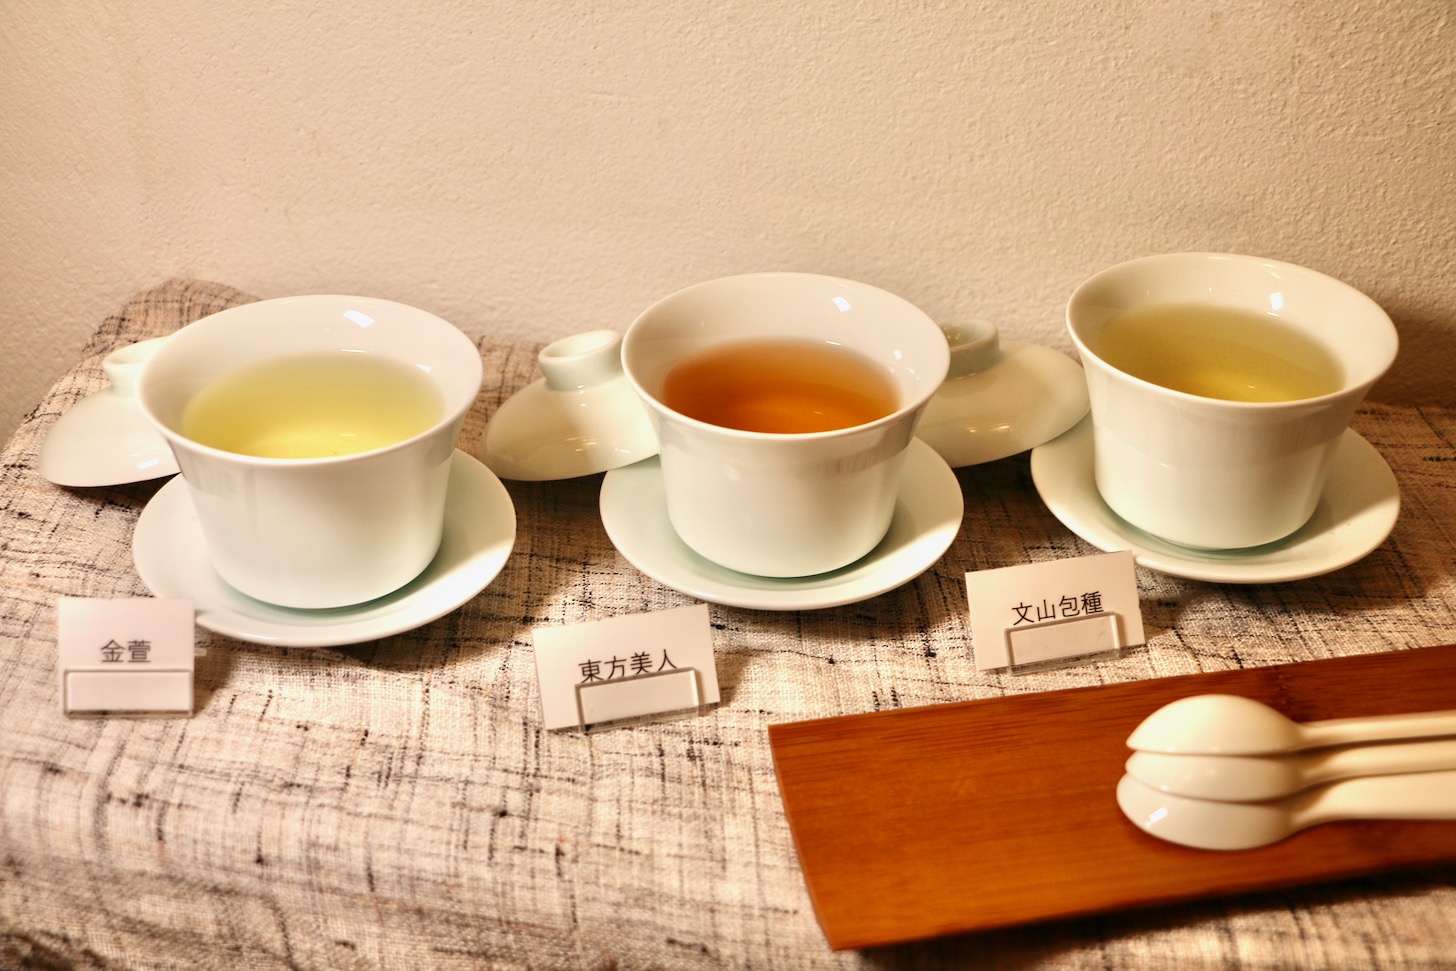 台湾茶3種類(東方美人、金萱、文山包種)